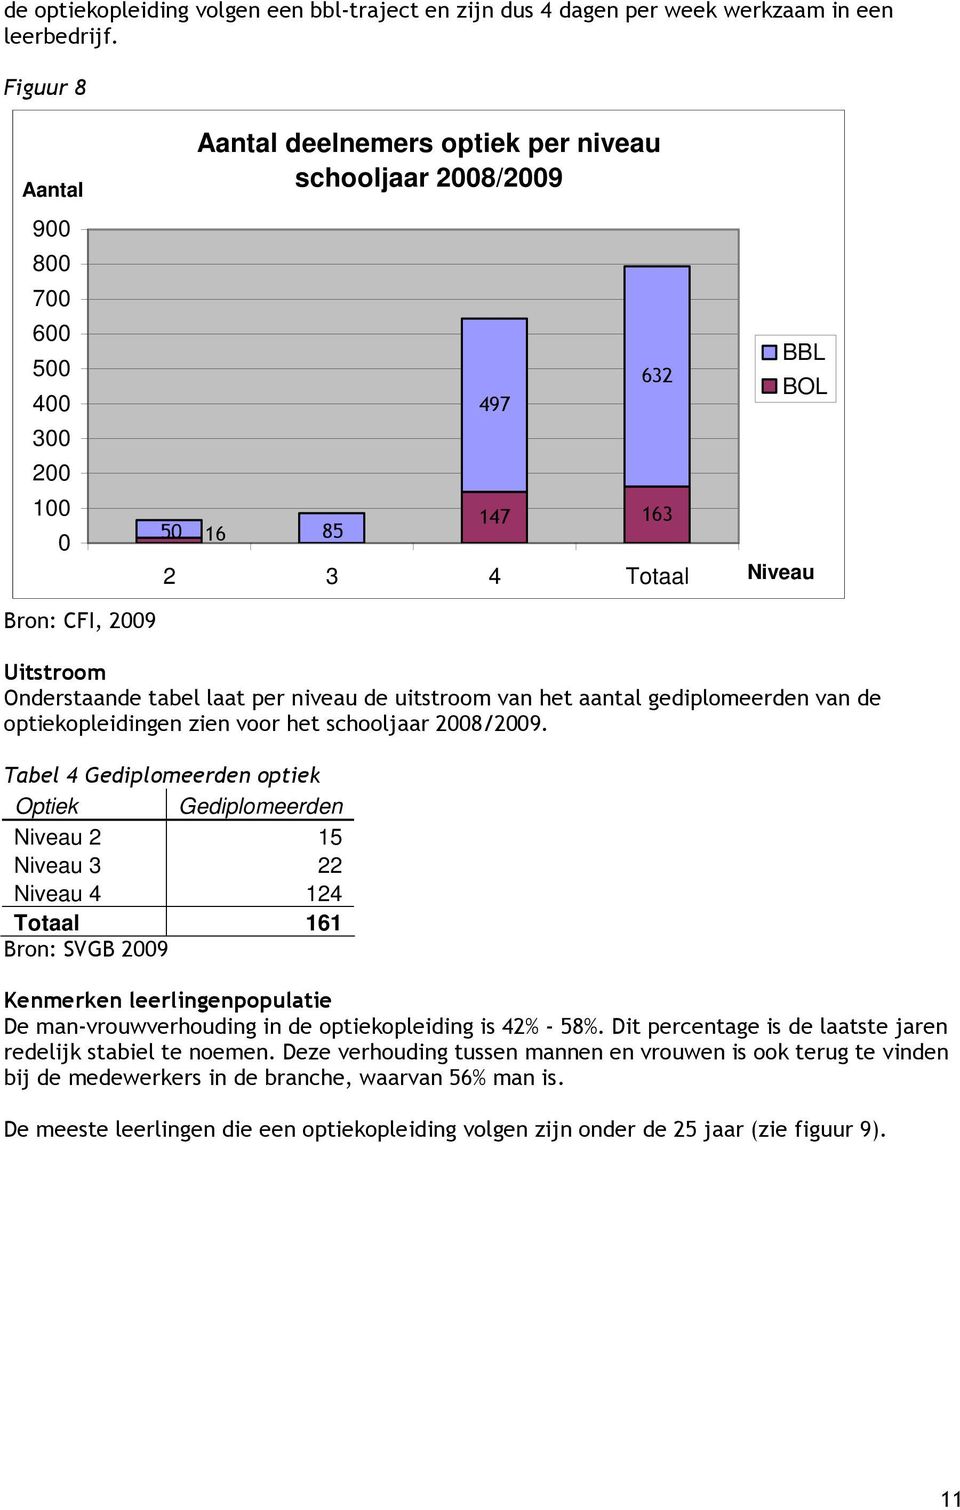 tabel laat per niveau de uitstroom van het aantal gediplomeerden van de optiekopleidingen zien voor het school 2008/2009.